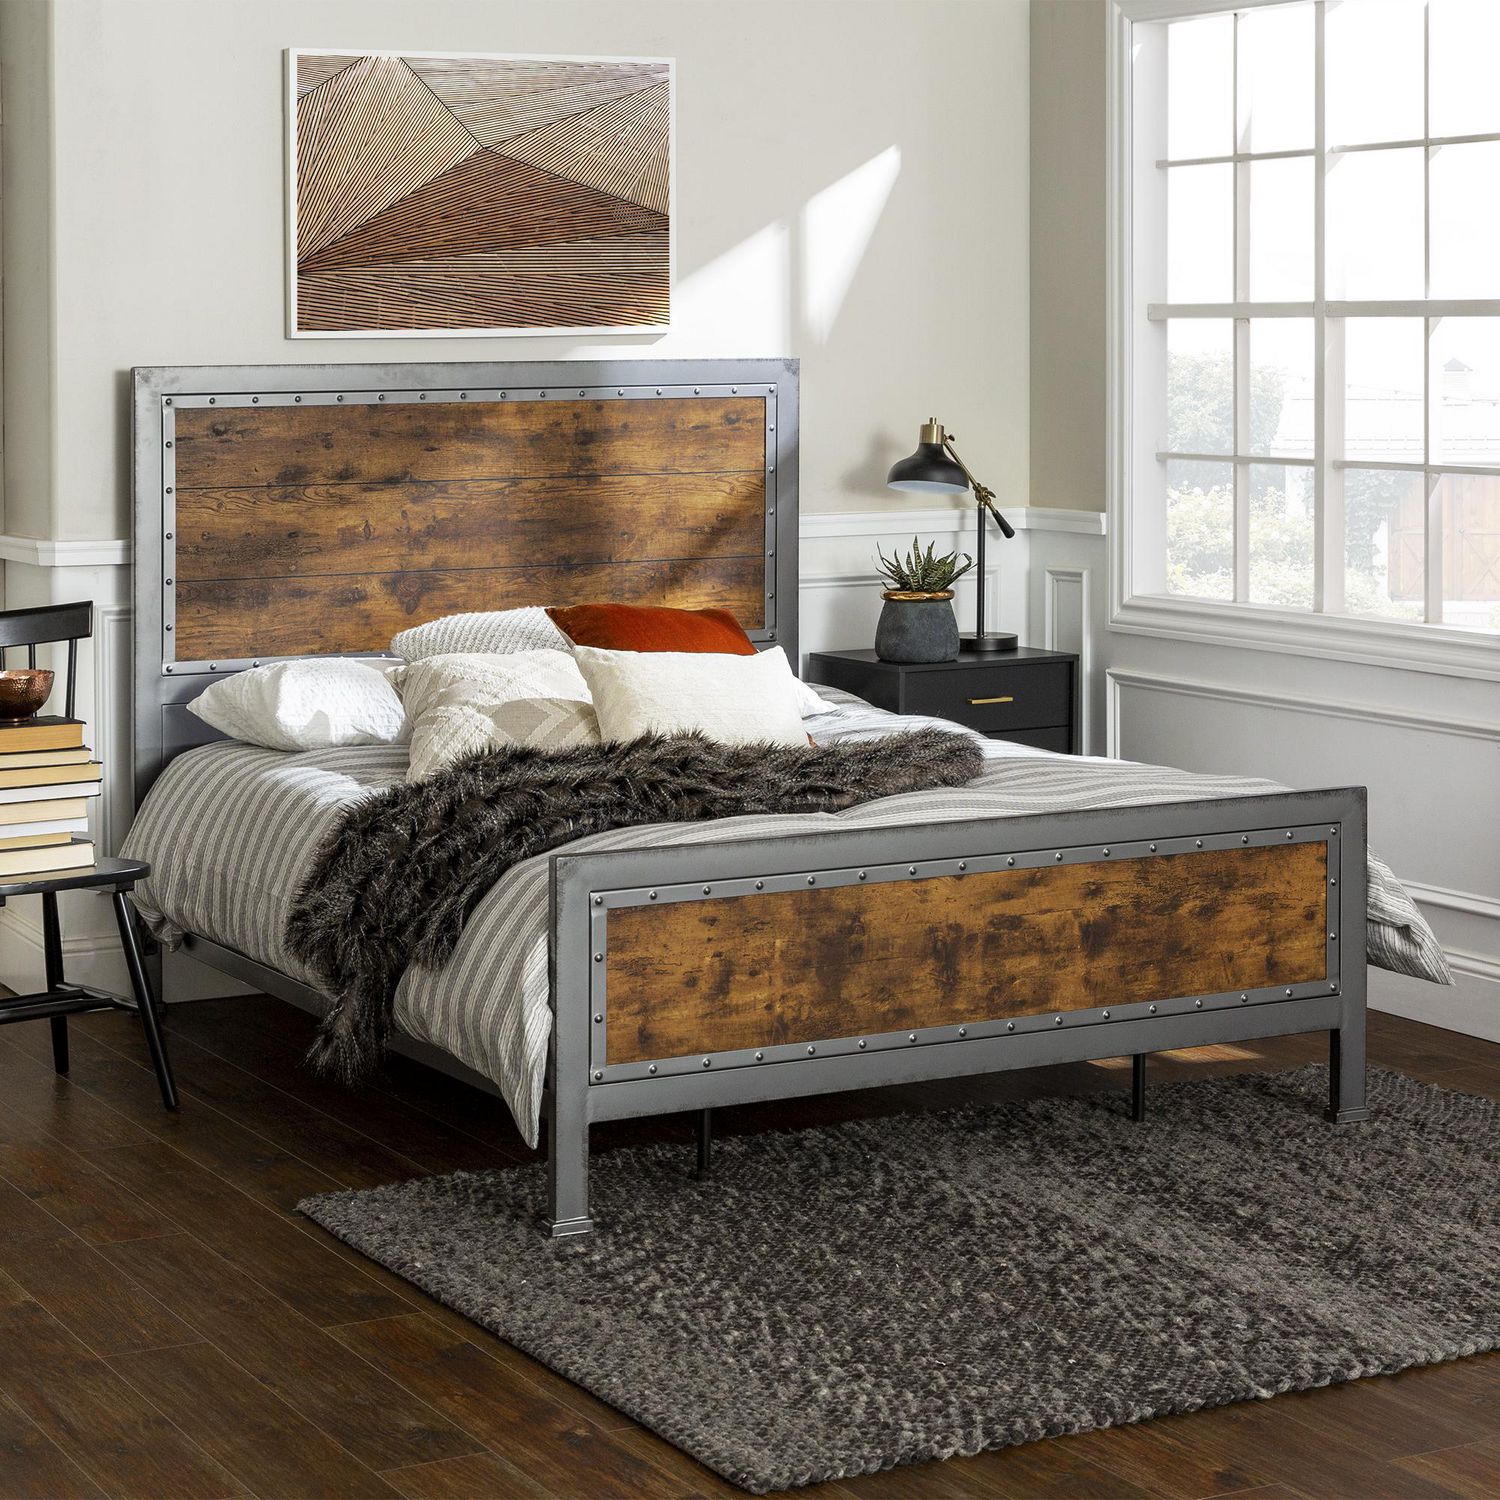 Rustic Industrial Metal Queen Bed Frame, Rustic Wooden Queen Size Bed Frame